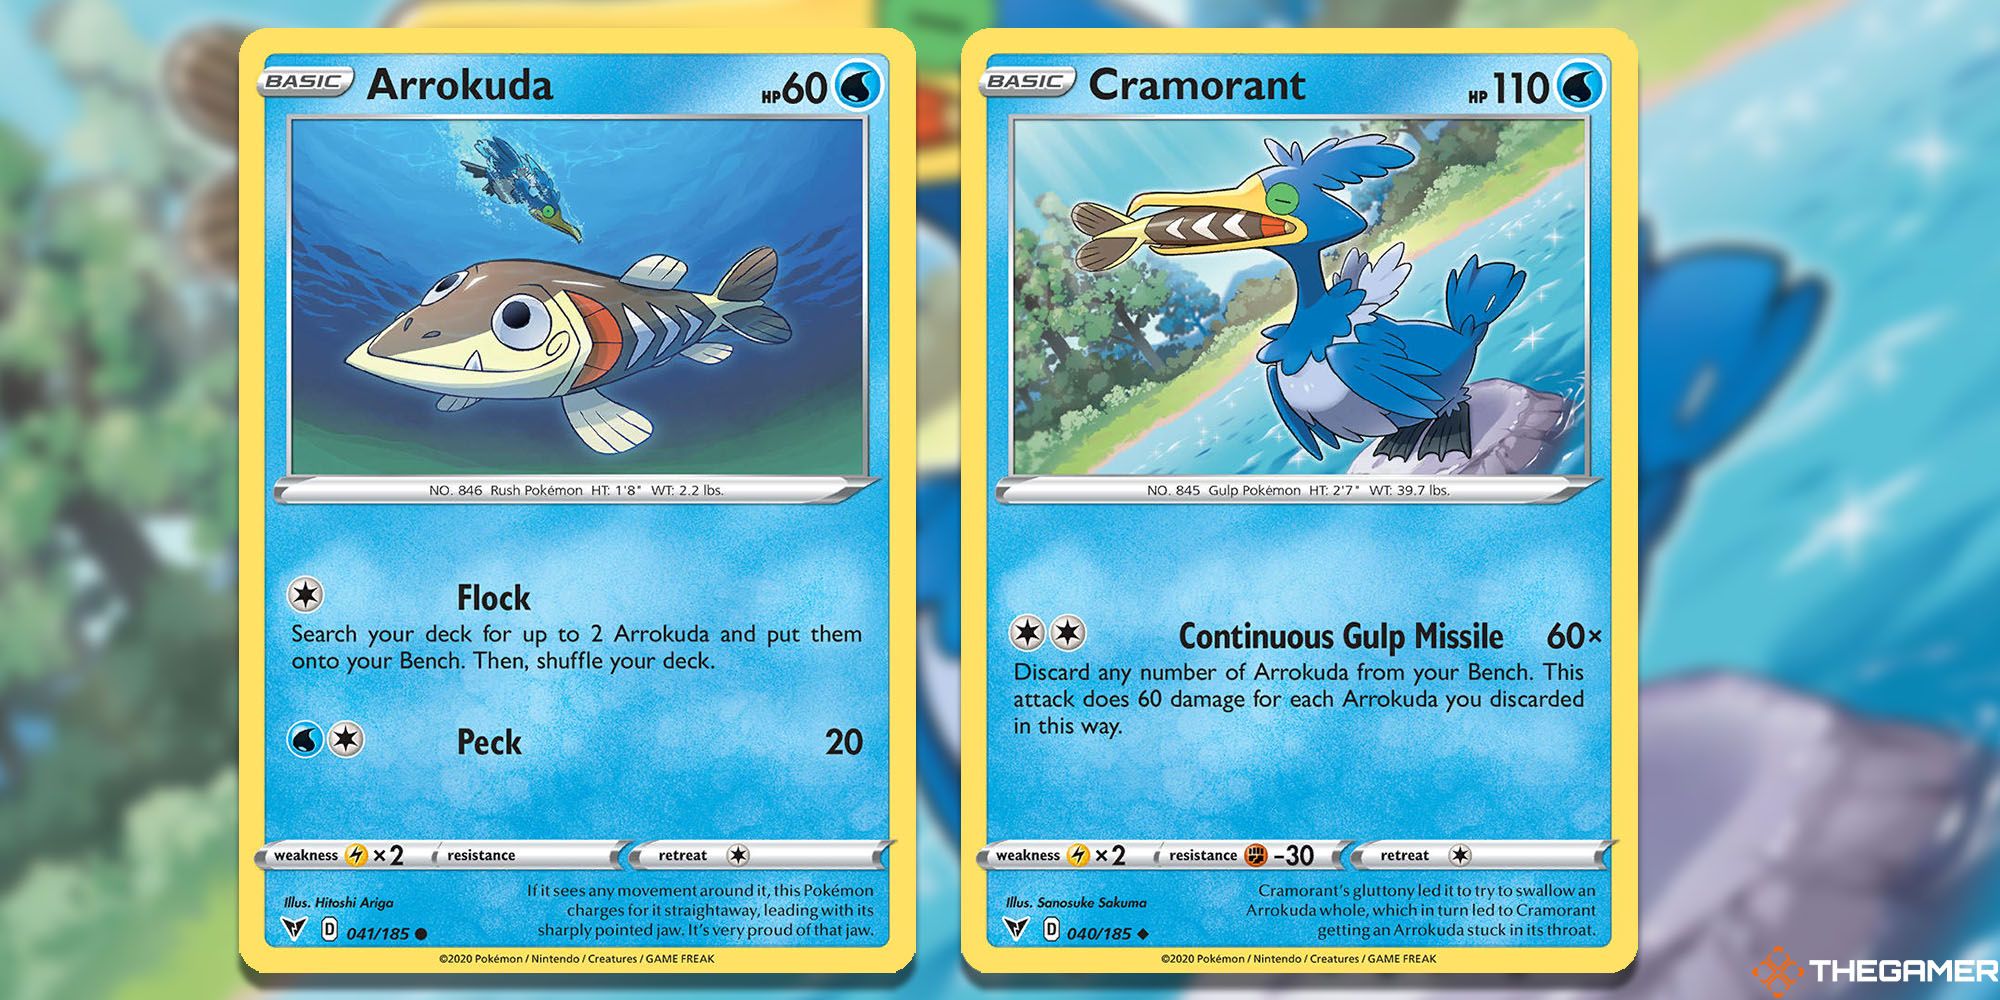 Arrokuda (Vivid Voltage #041) and Cramorant (Vivid Voltage #040) Pokemon TCG cards.